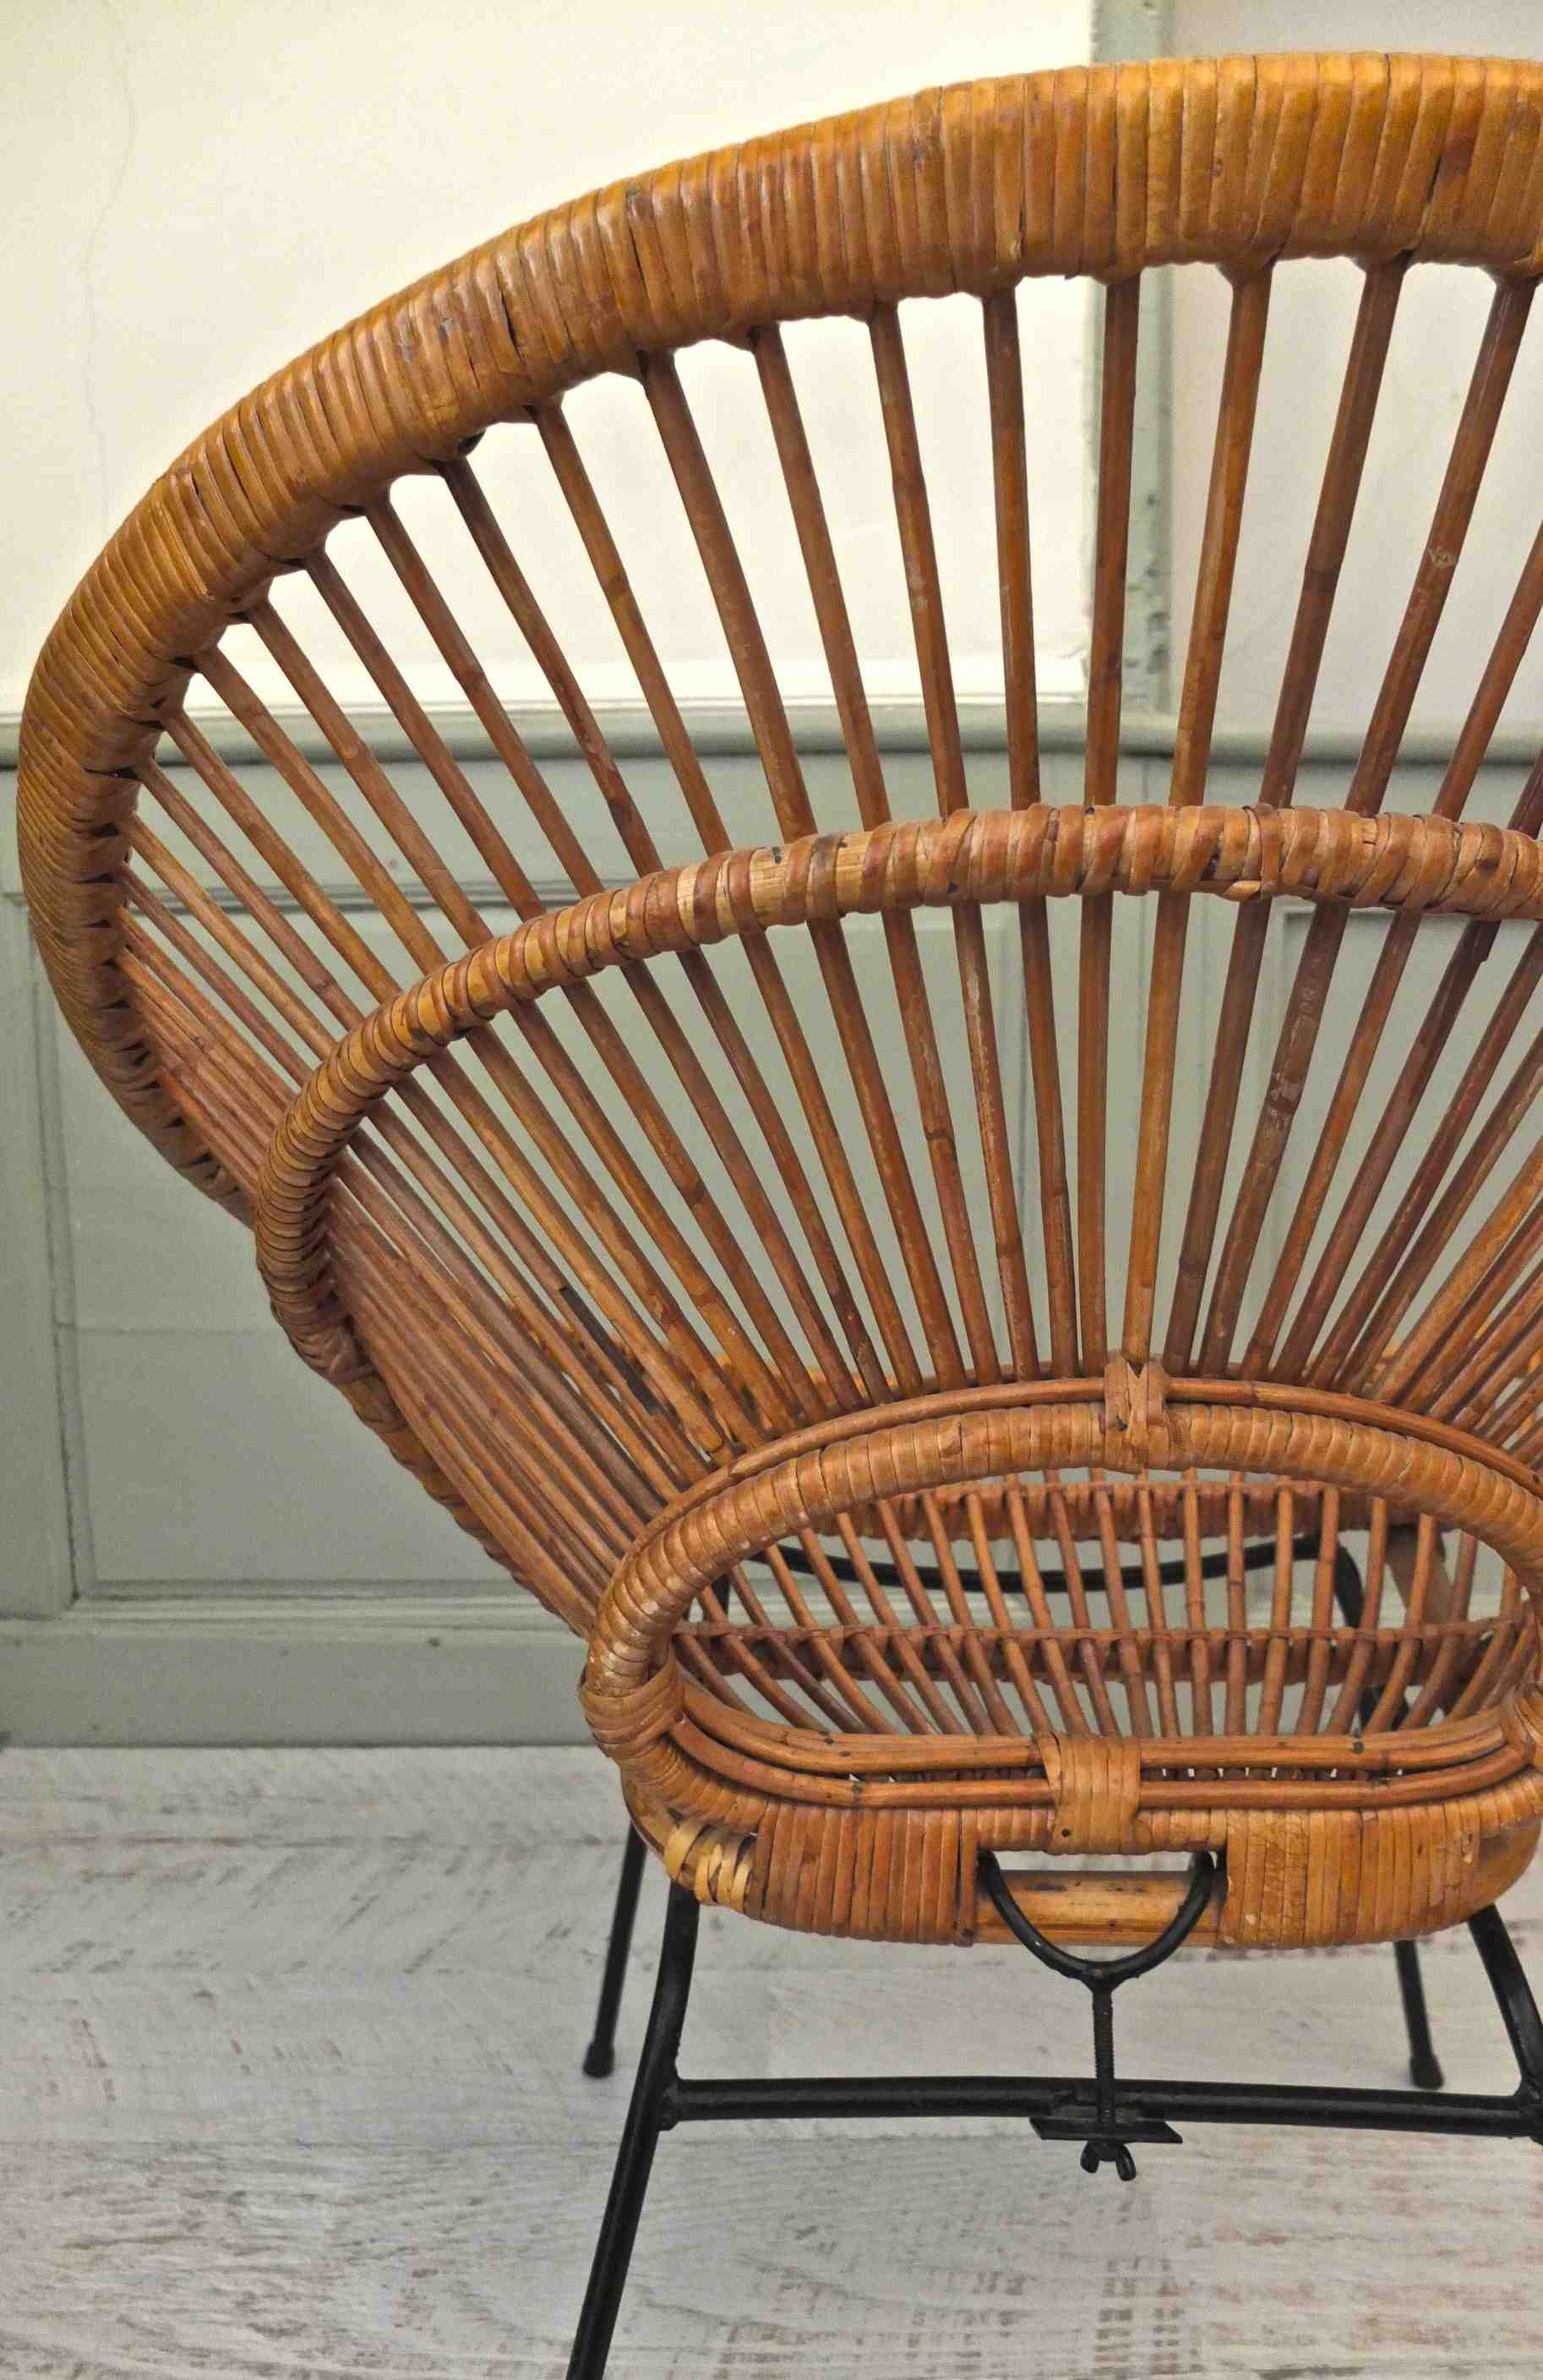 Slavia Vintage fauteuil en rotin des années 50 Janine Abraham modèle "Punta Sirena" photo arrière